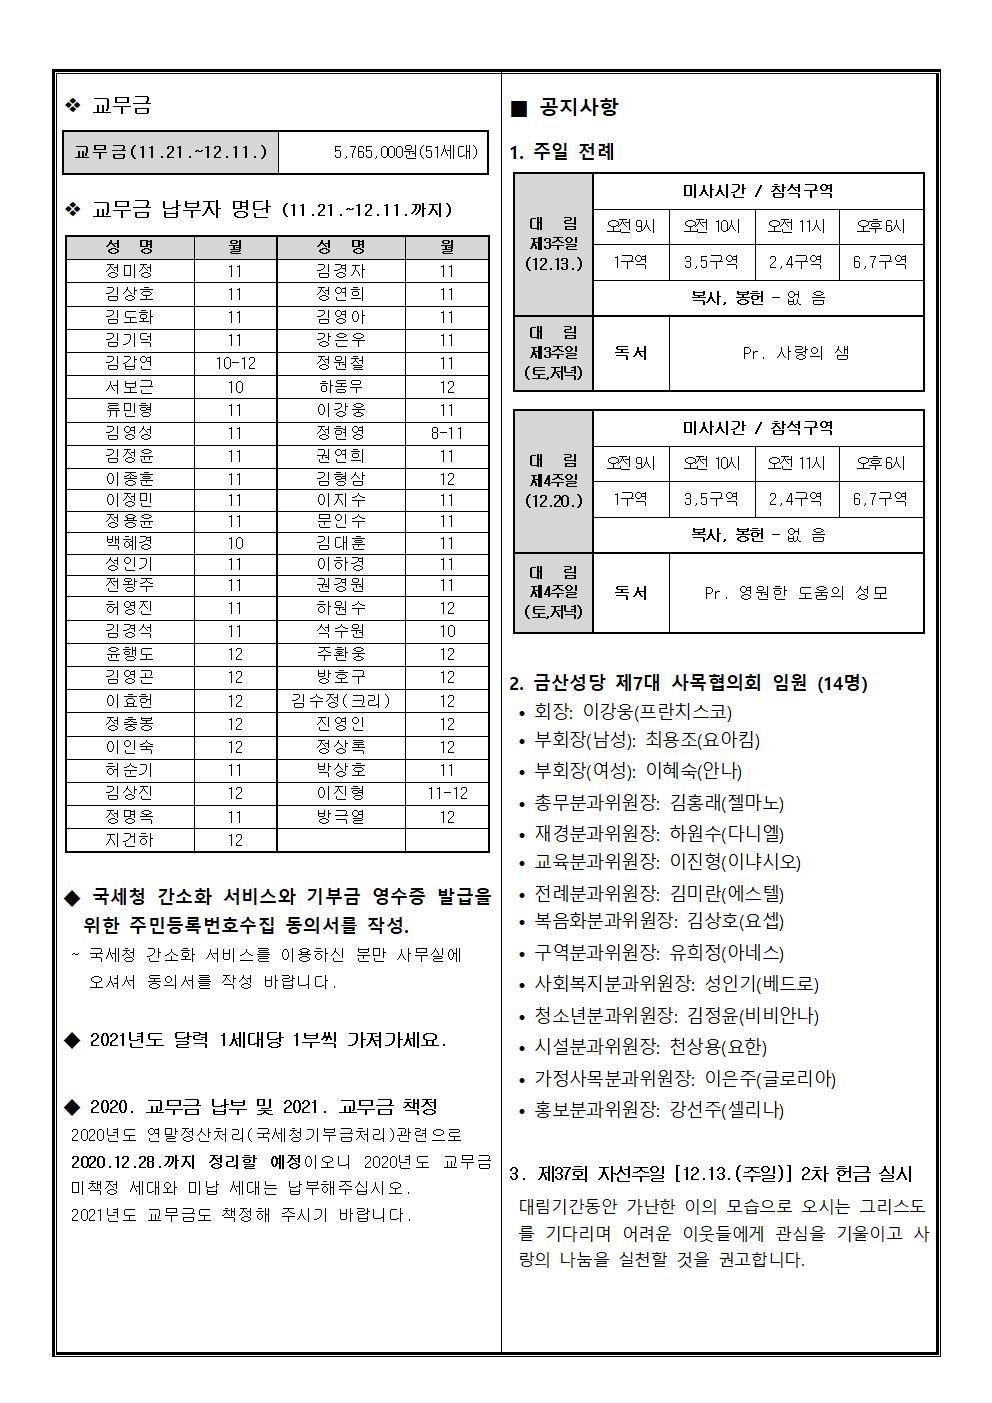 금산주보-610호-대림 제3주일-자선주일-20201213-11월재정-최종002.jpg